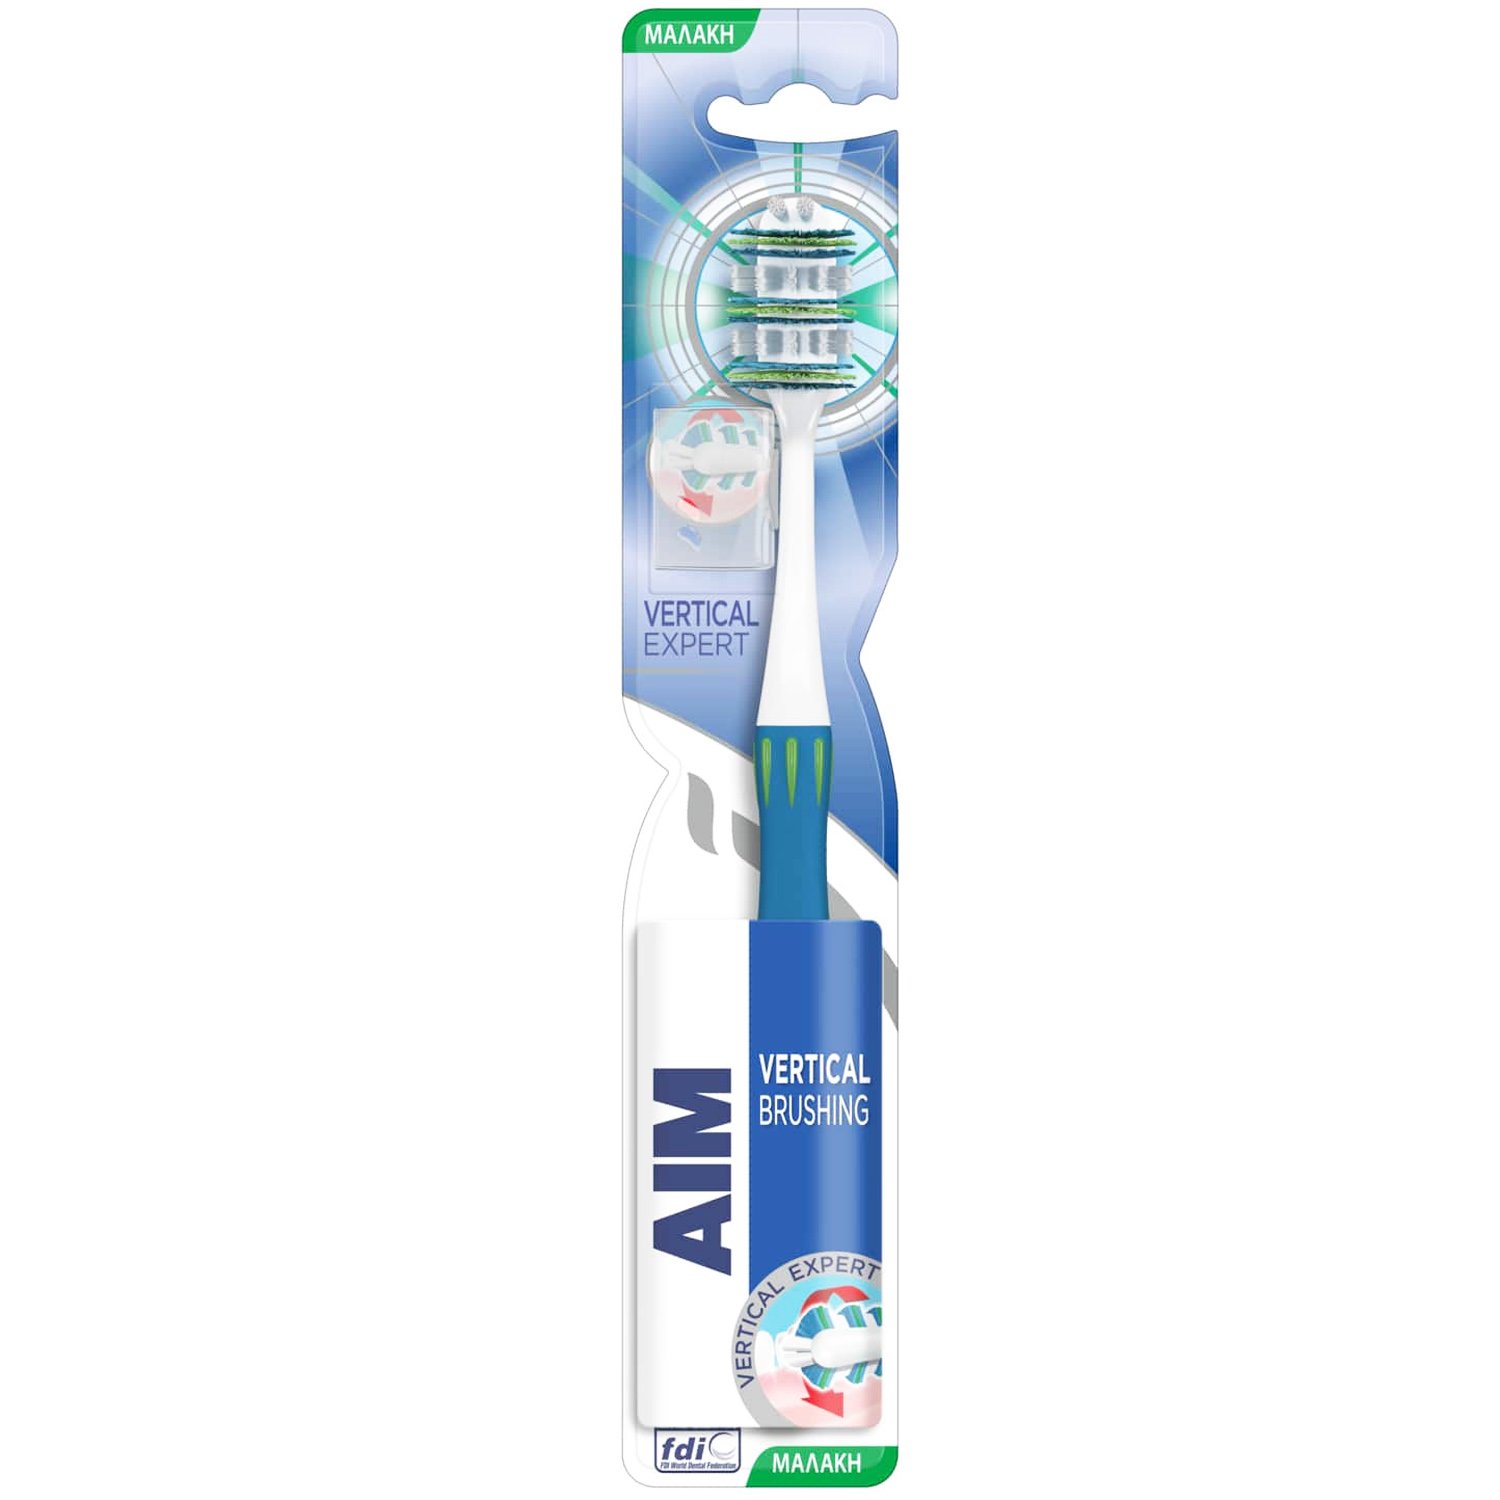 Aim Vertical Expert Toothbrush Soft Μαλακή Οδοντόβουρτσα με Θυσάνους σε Σχήμα Βεντάλιας 1 Τεμάχιο – Μπλε